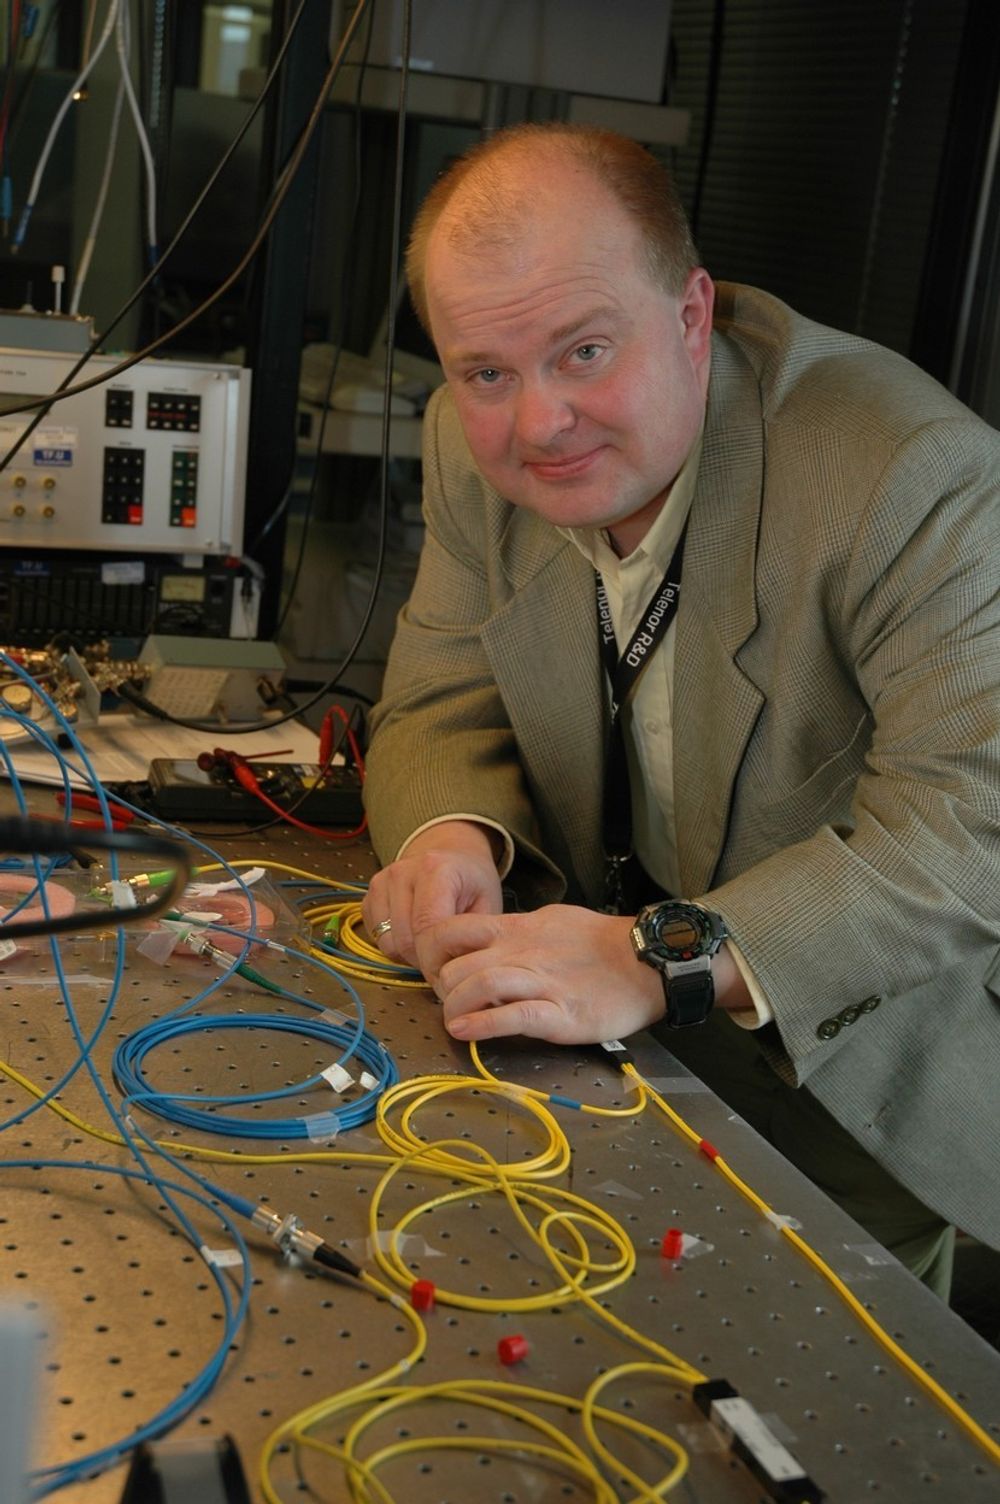 LEKER MED LYS: Steinar Bjørnstad har et avansert opplegg for forskning på fiberoptisk kommunikasjon i sitt laboratorium på Fornebu.